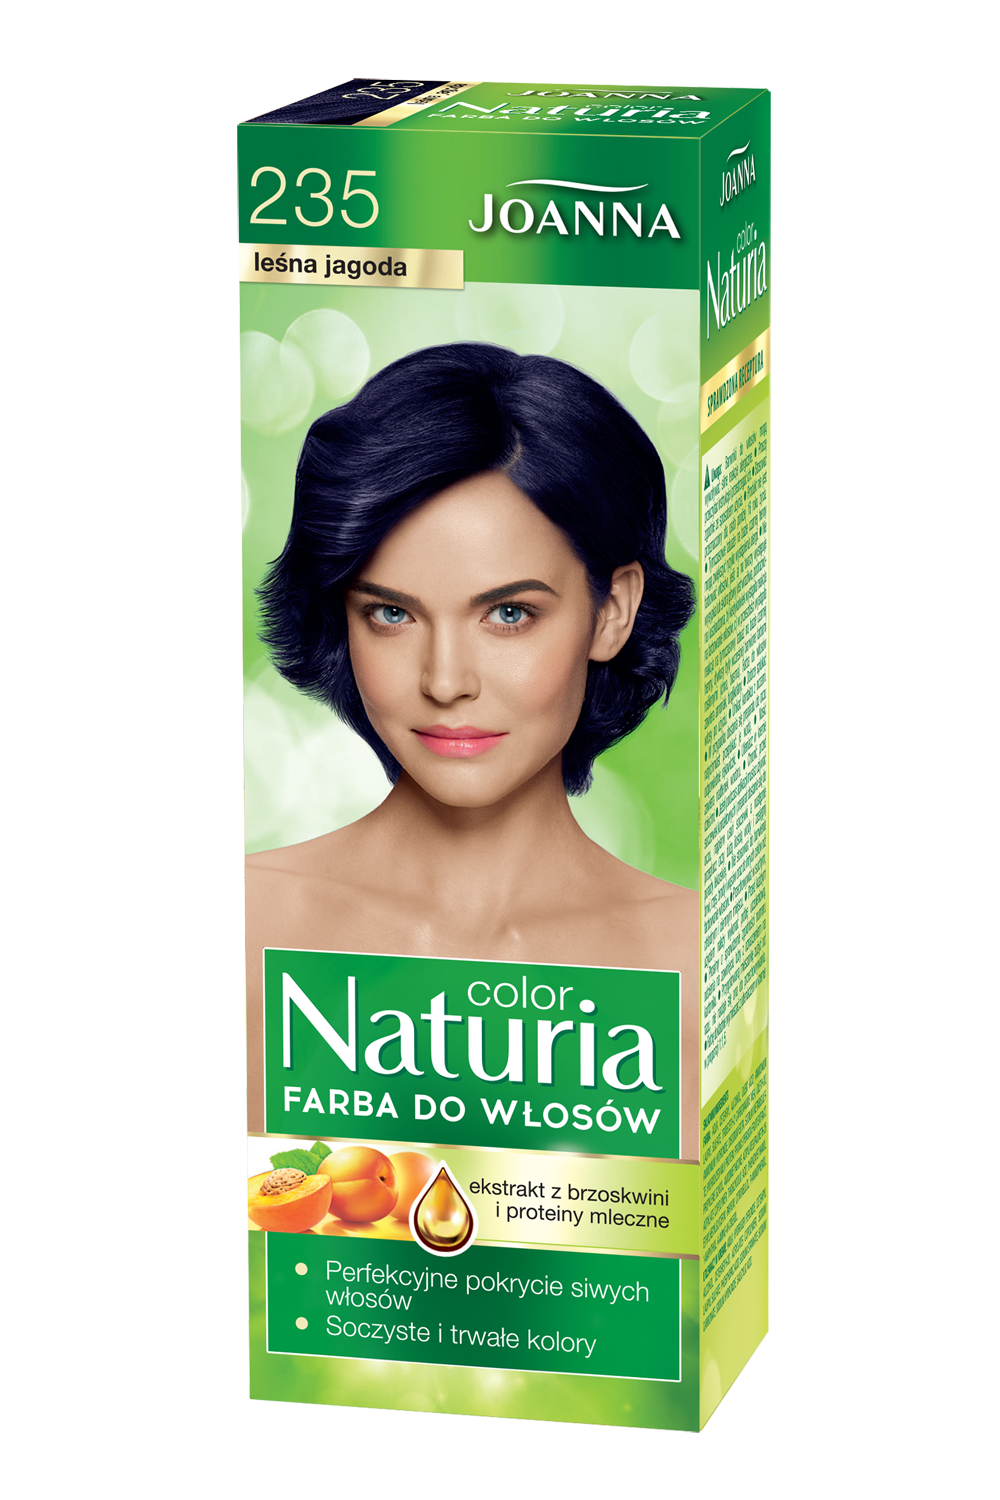 Farba do włosów Joanna Naturia Color w odcieniu nr 235 leśna jagoda